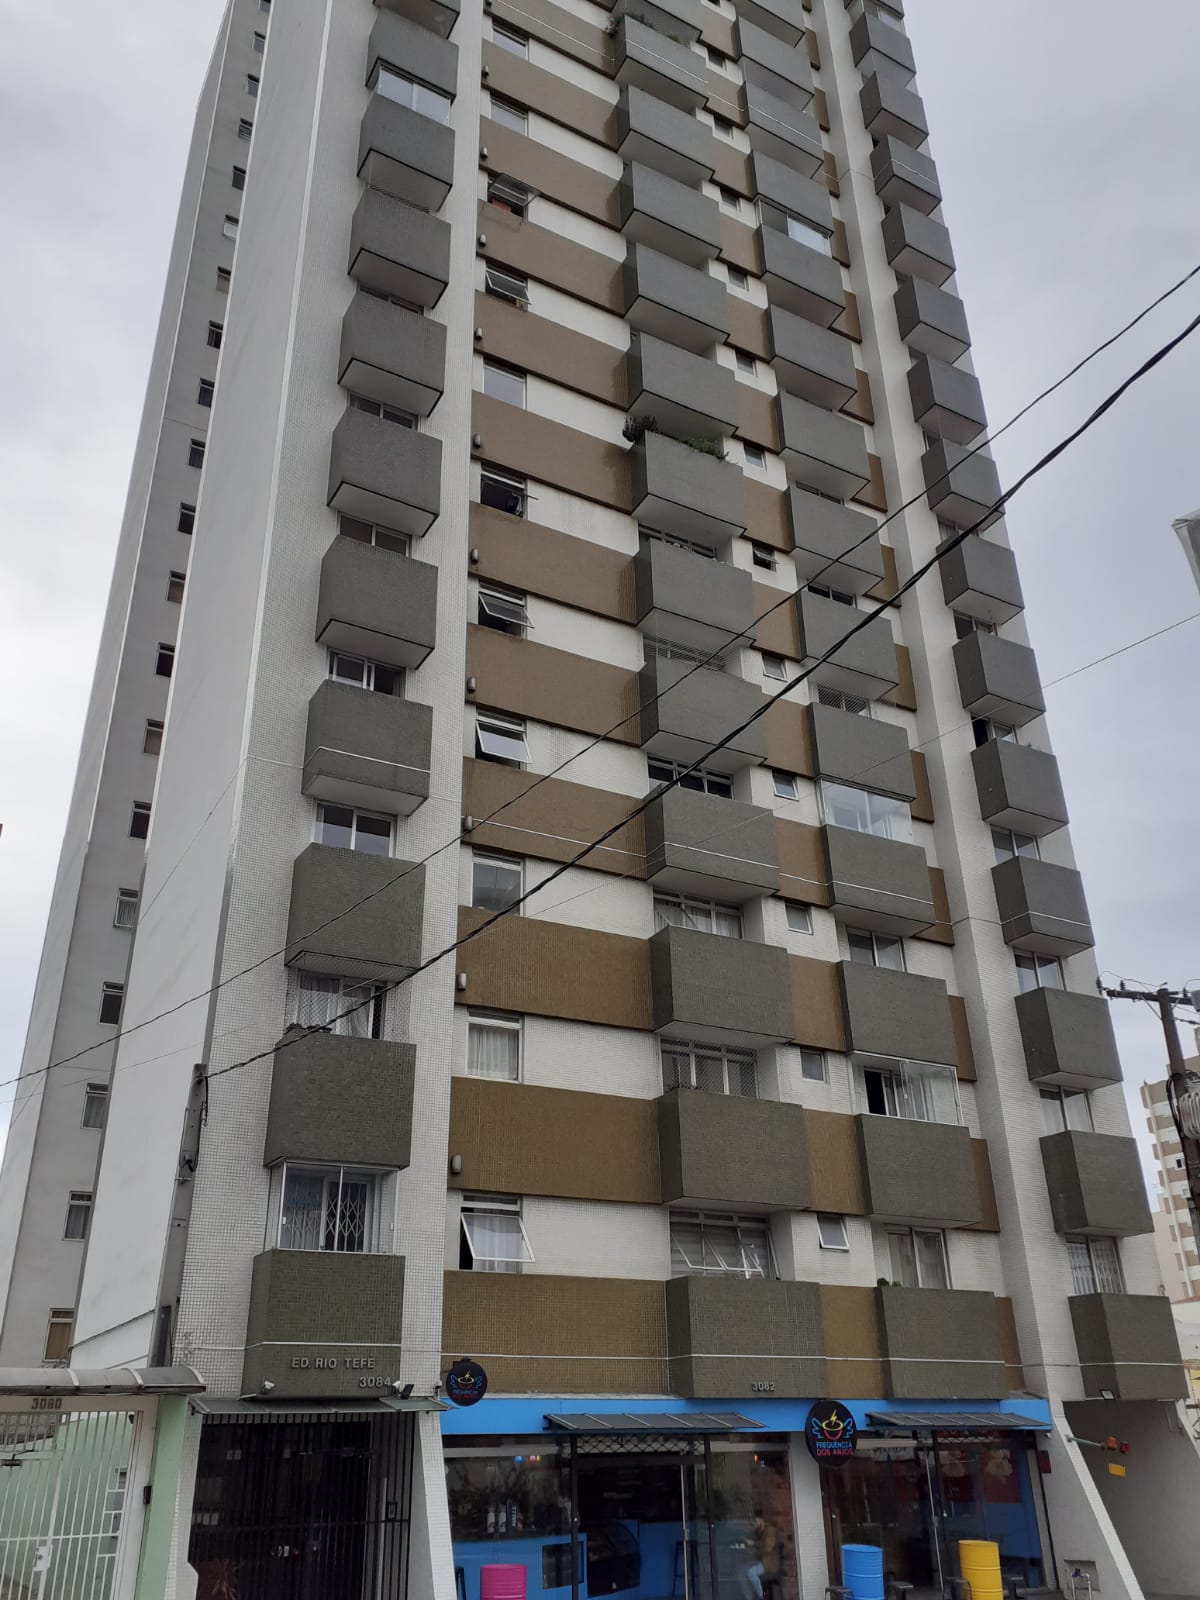 Apartamento para alugar com 54,40M² e 2 dormitórios, sendo 1 com sacada no Centro de Curitiba